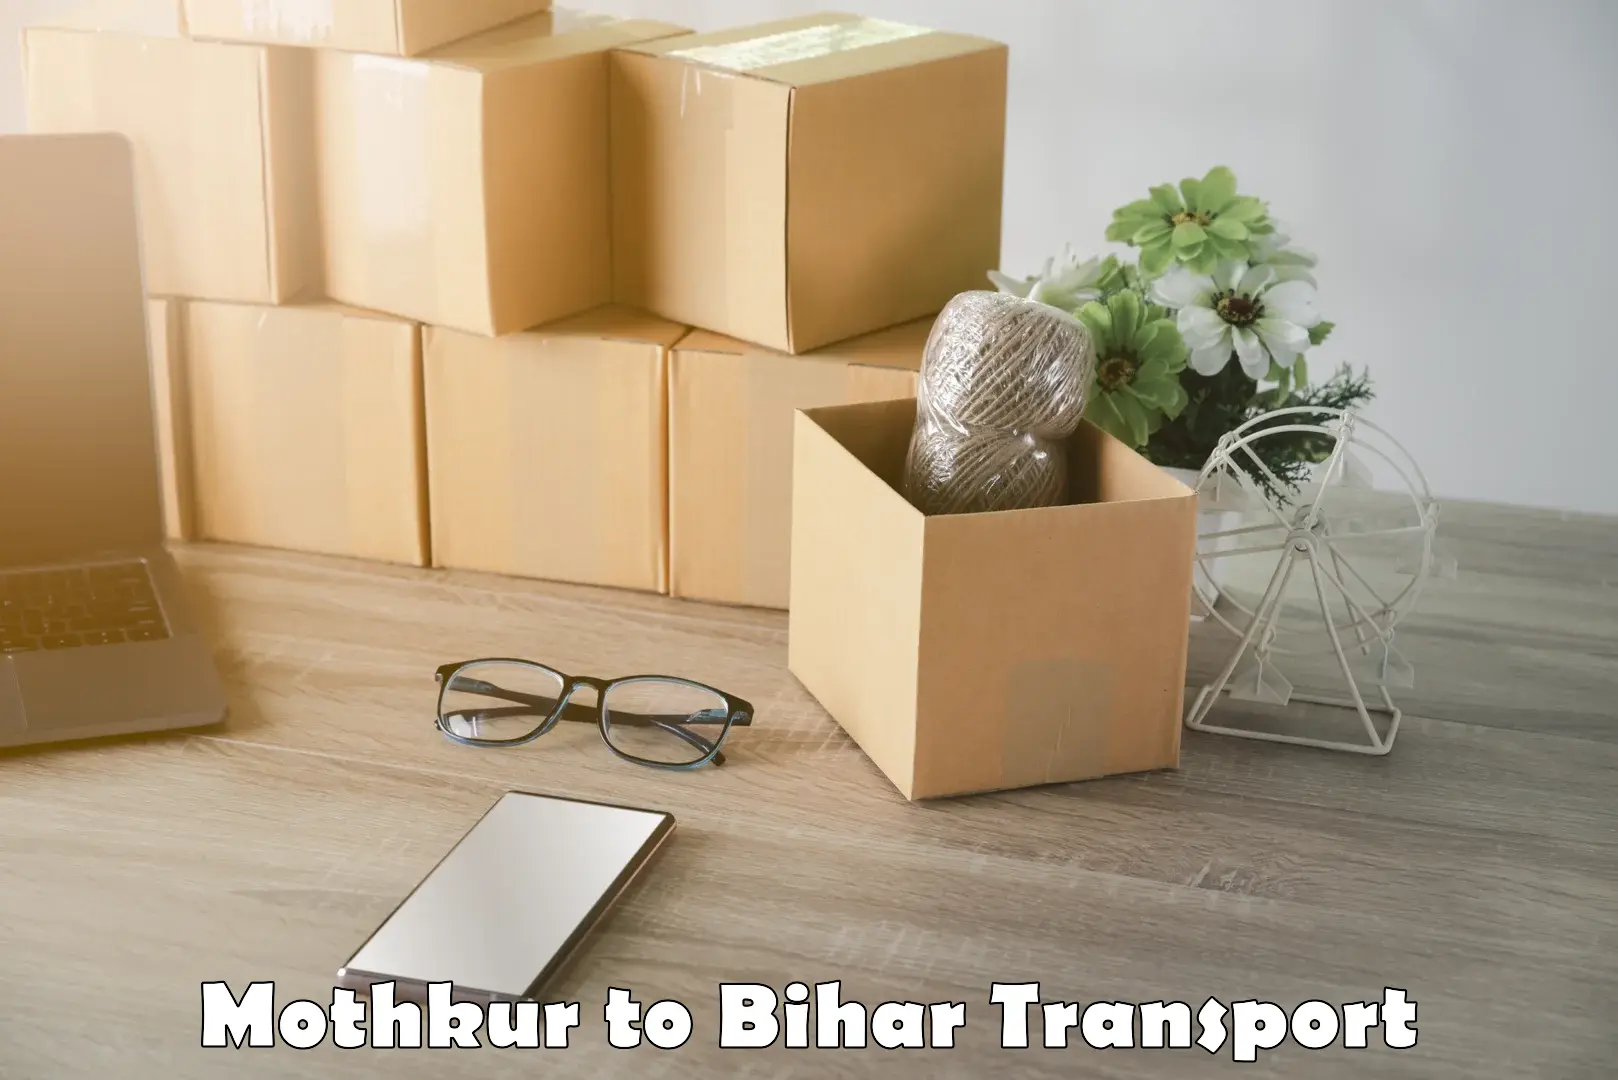 Furniture transport service in Mothkur to Lakhisarai